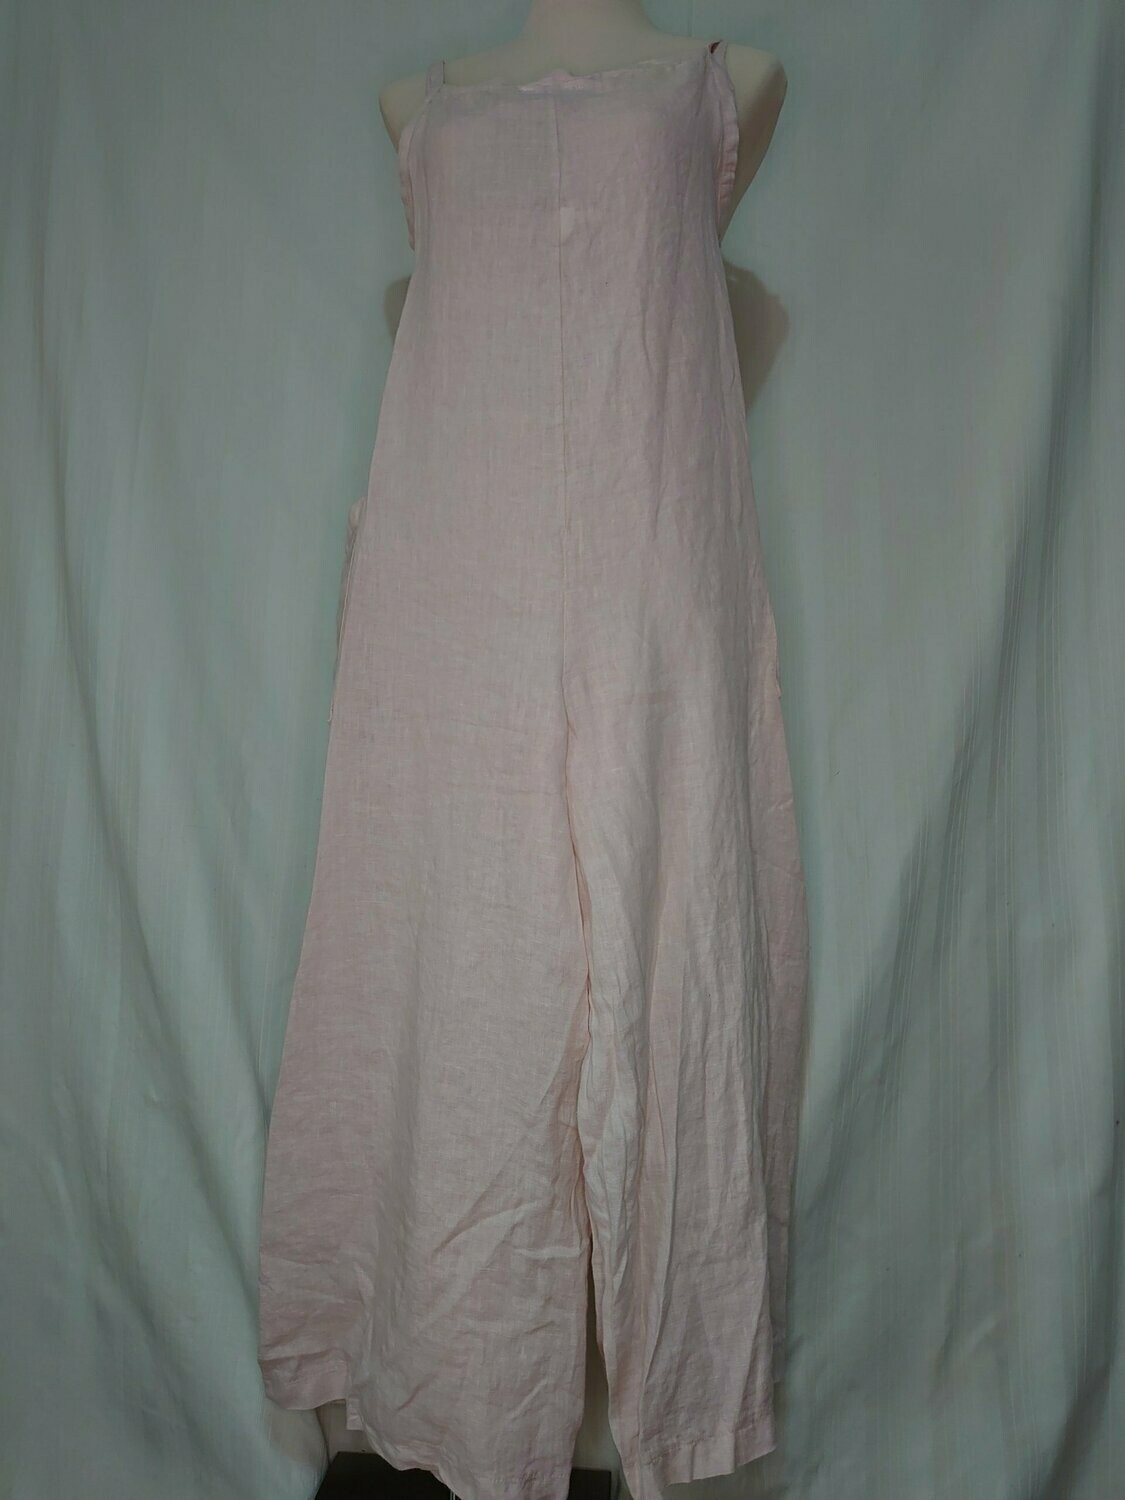 Italian Dungaree Dress, Pink